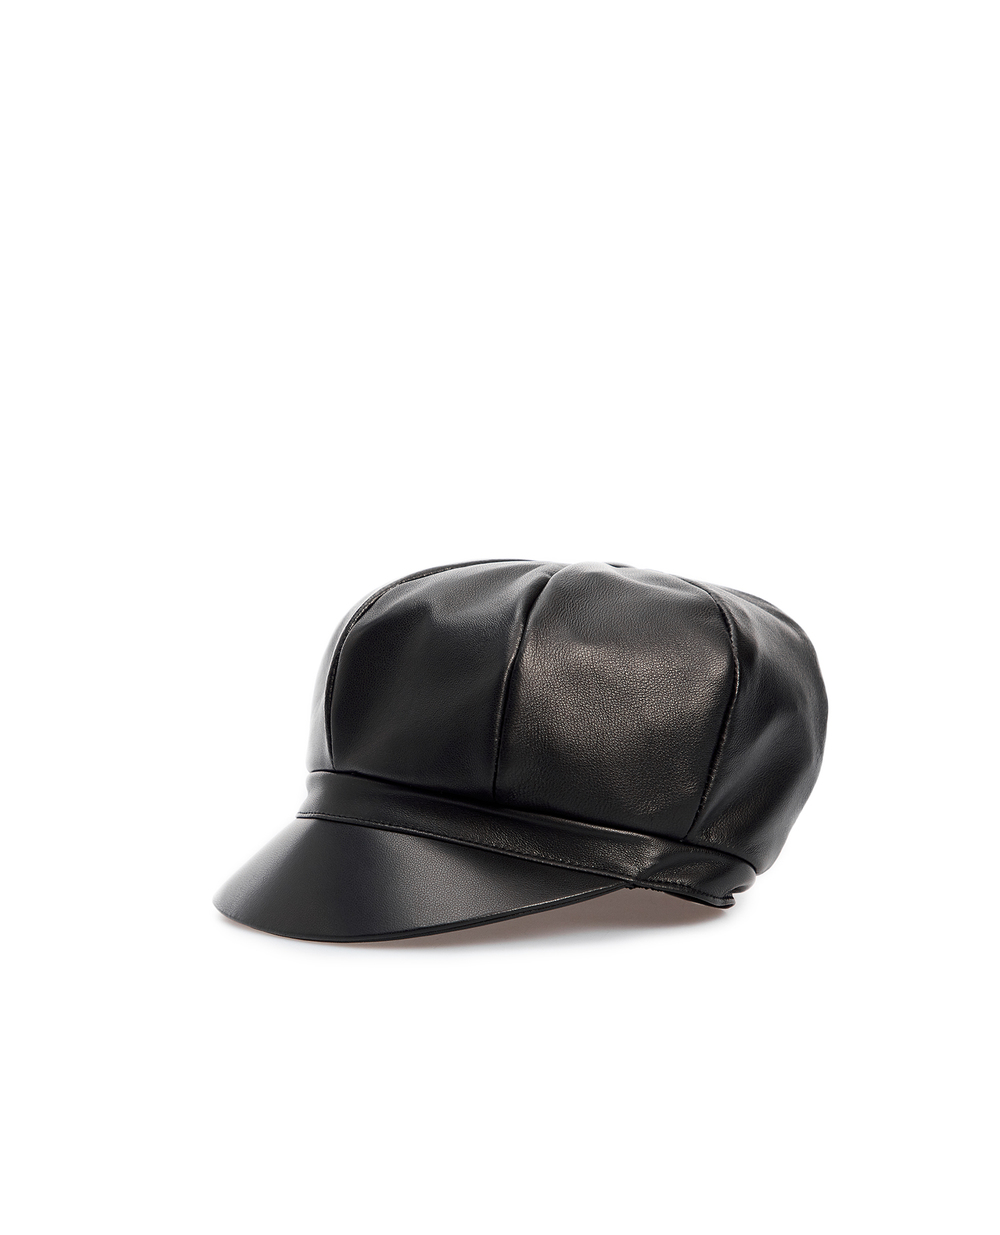 Кожаное кепи Dolce&Gabbana FH505A-HULFY, черный цвет • Купить в интернет-магазине Kameron